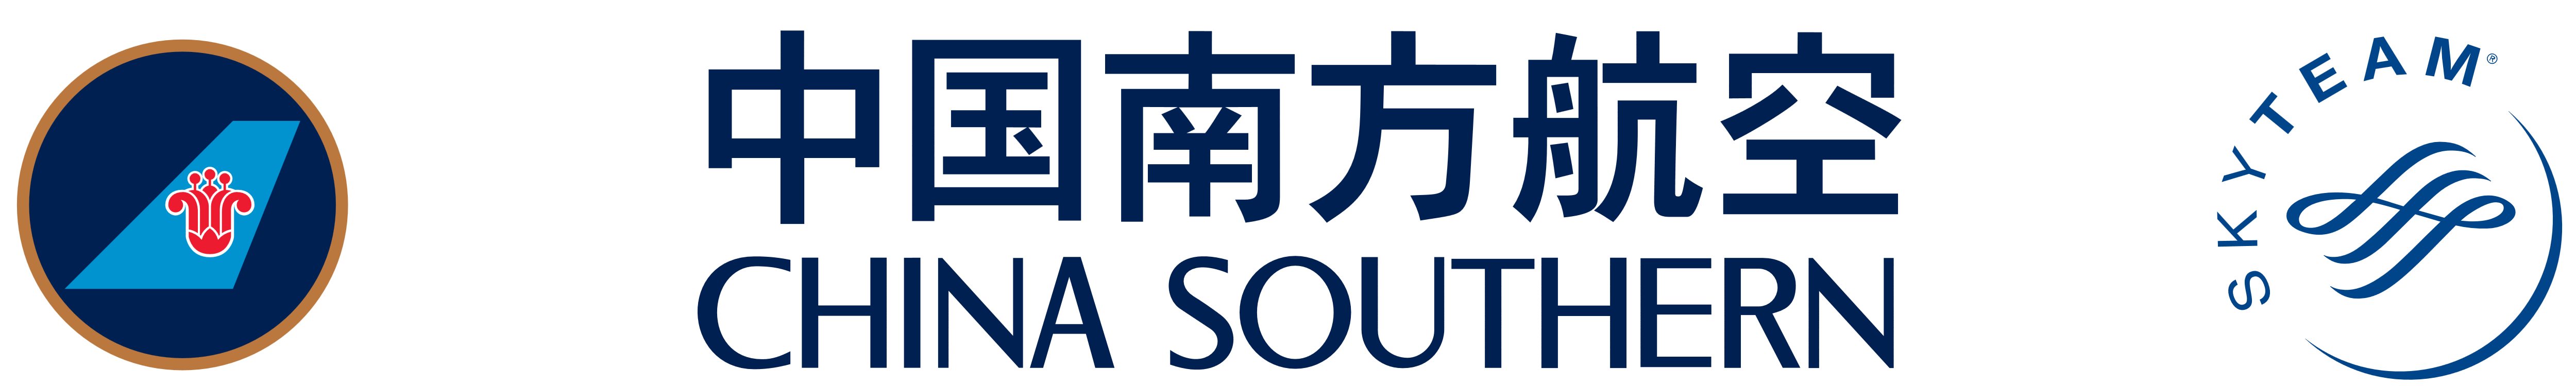 Company logo2-English PMS Chi